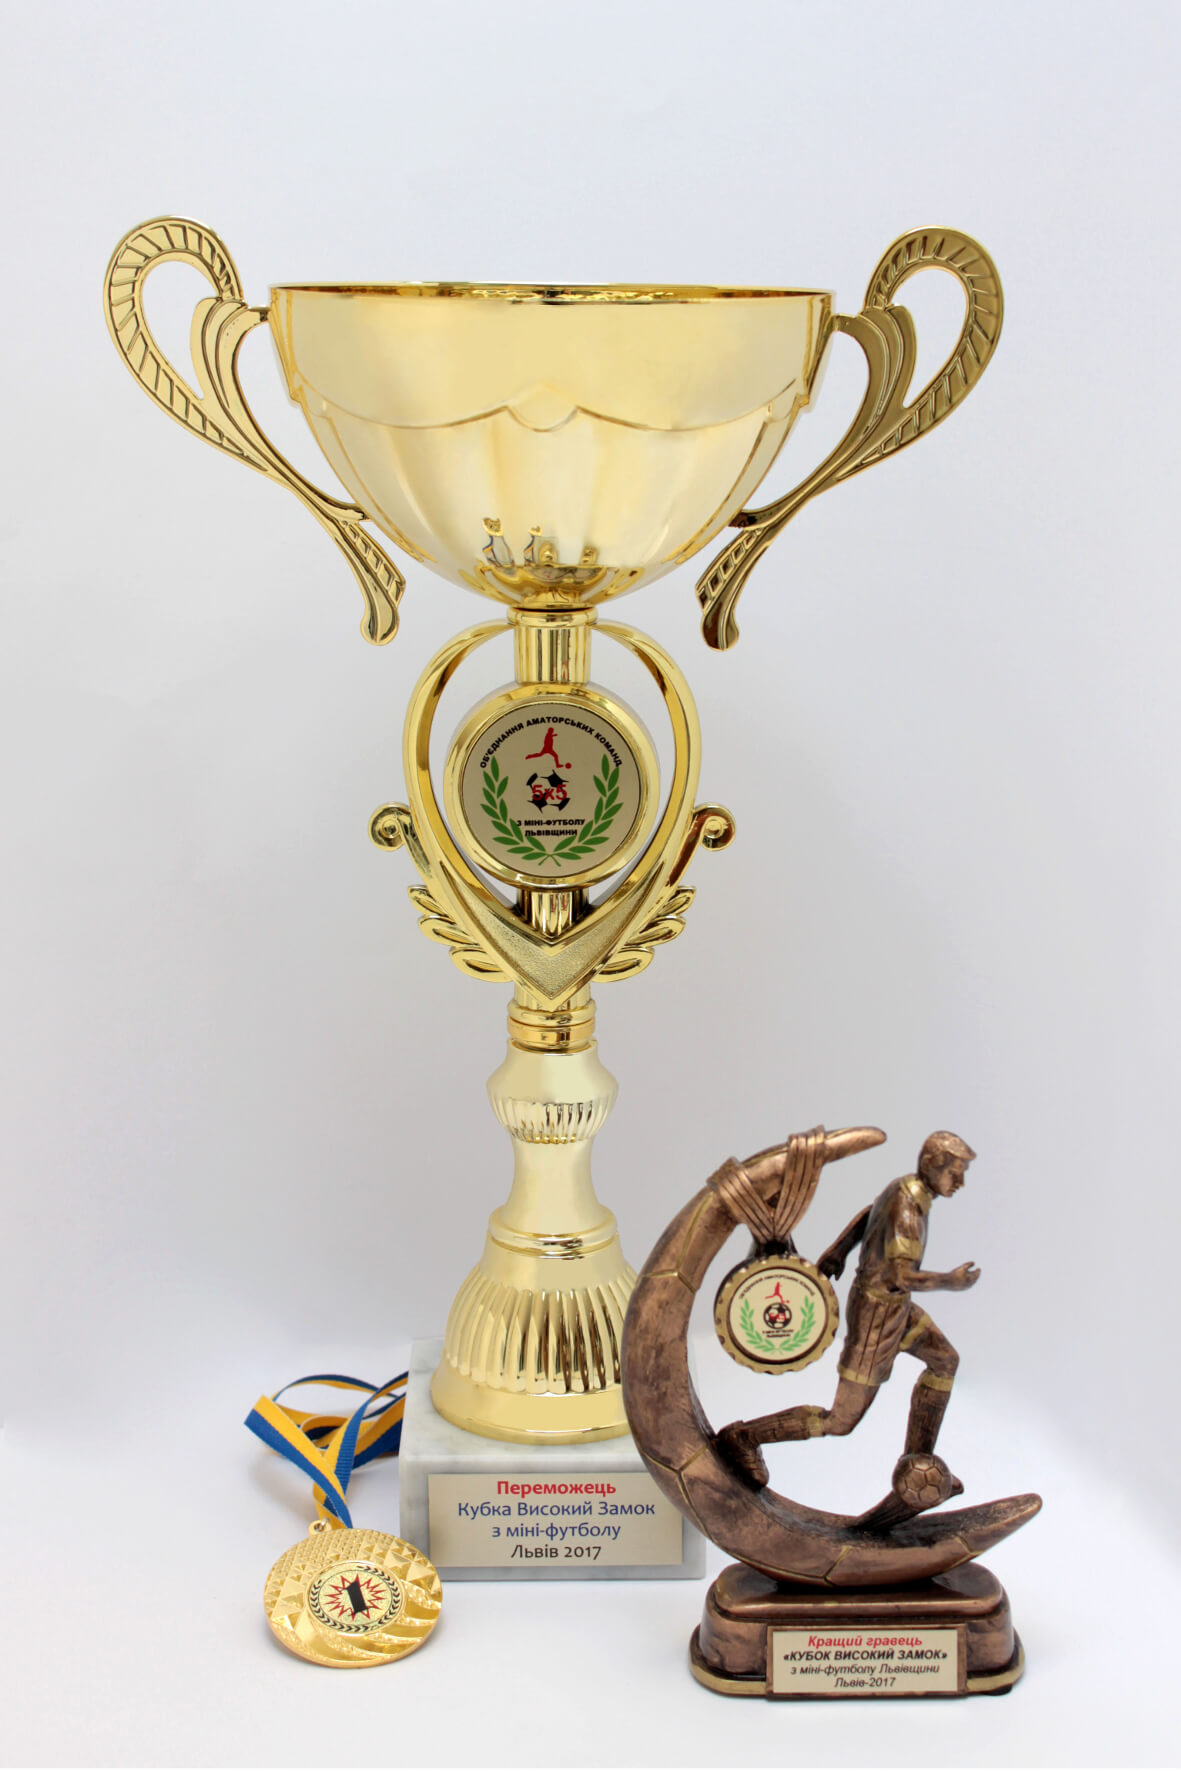 Кубок переможця Весняного Кубку «Високий замок» з міні-футболу. Окрім здобутого кубку також гравця «Галицької здоби» було визнано кращим гравцем весняного кубку.